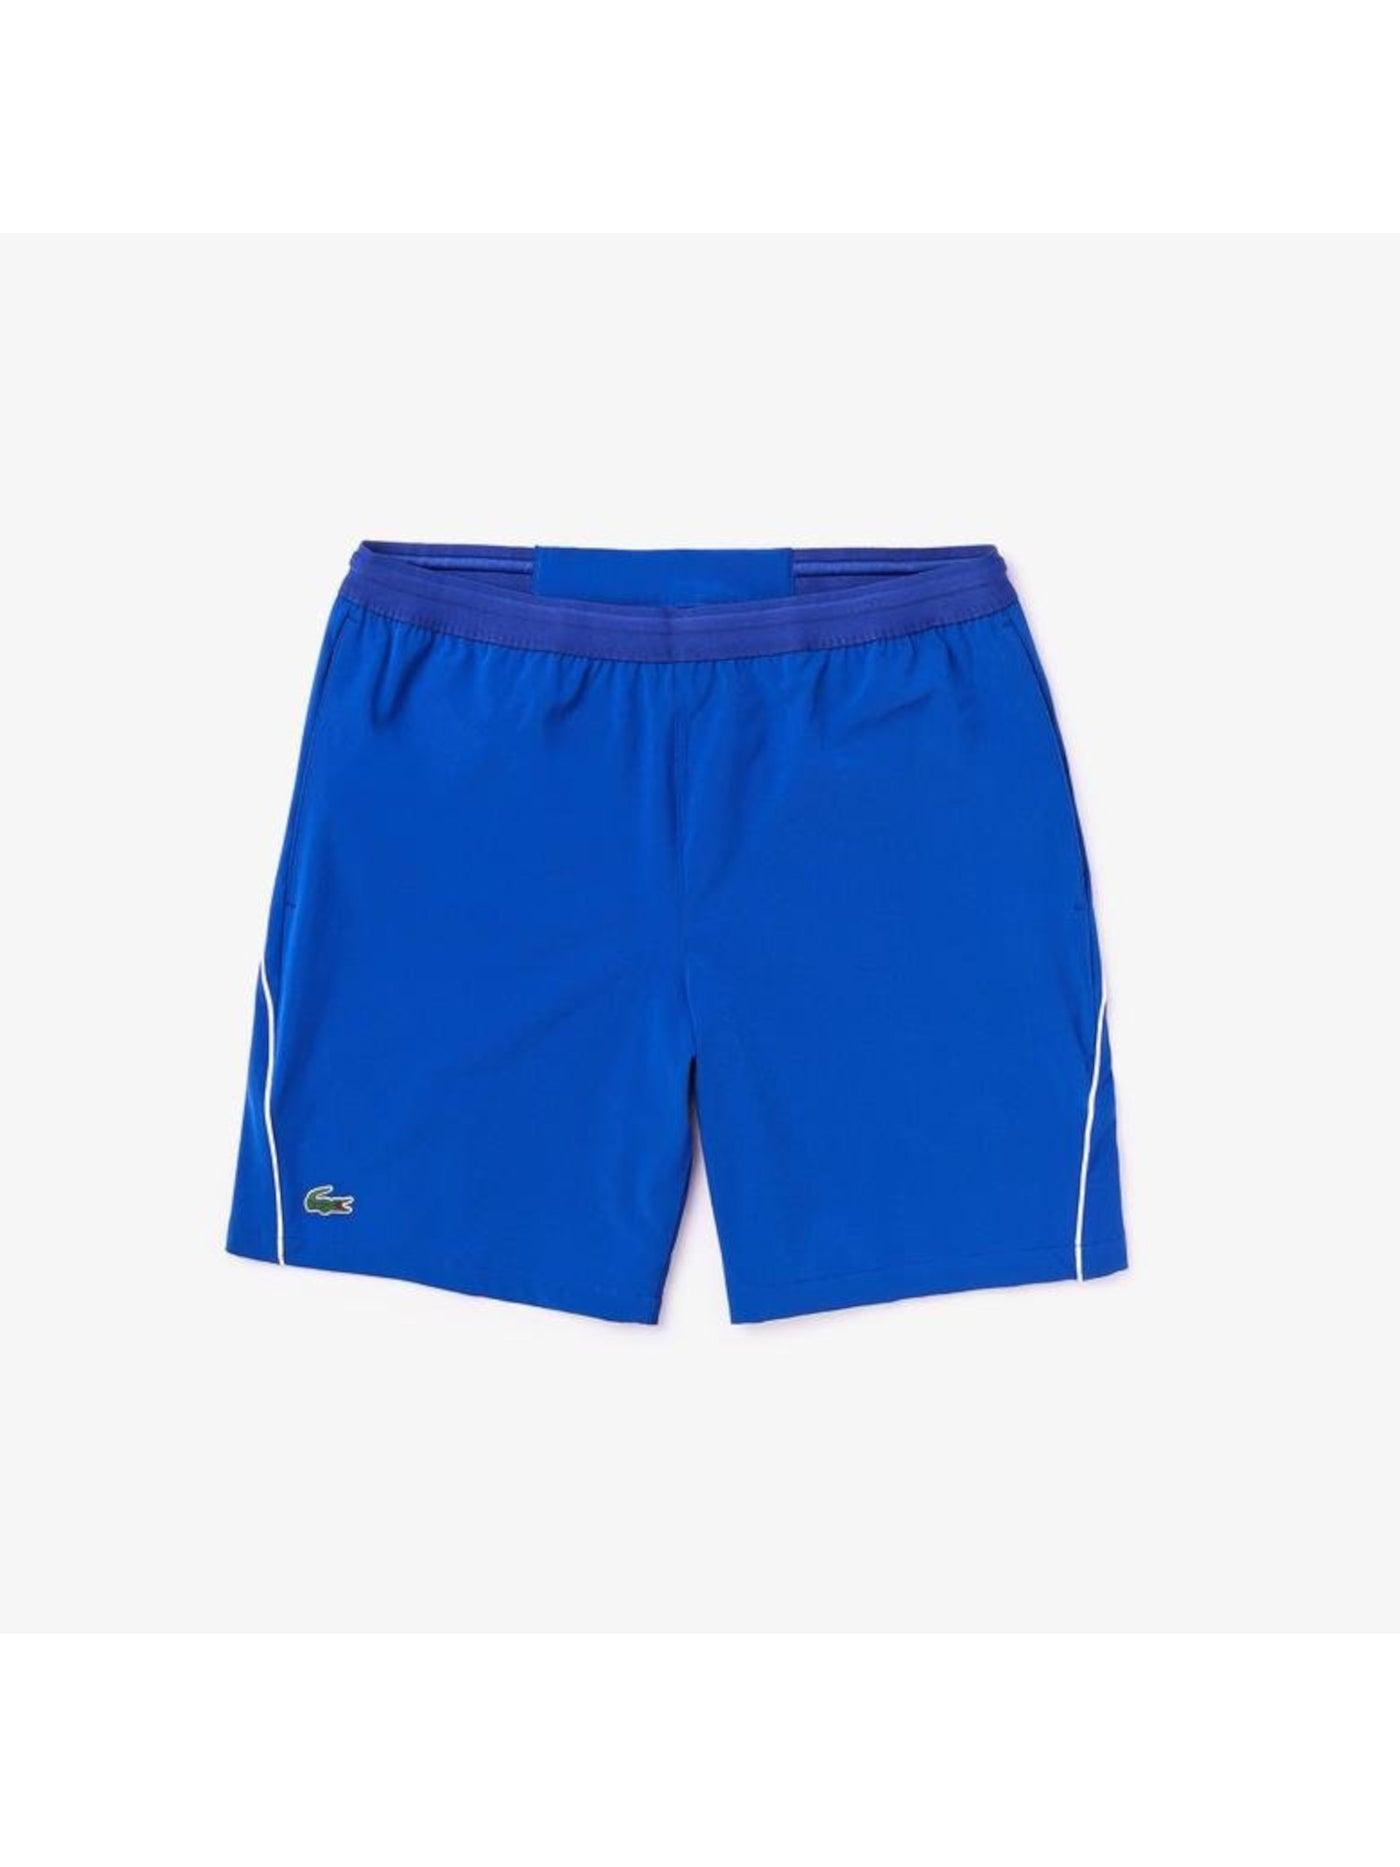 LACOSTE Mens Blue Expandable Waist Athletic Shorts XXL